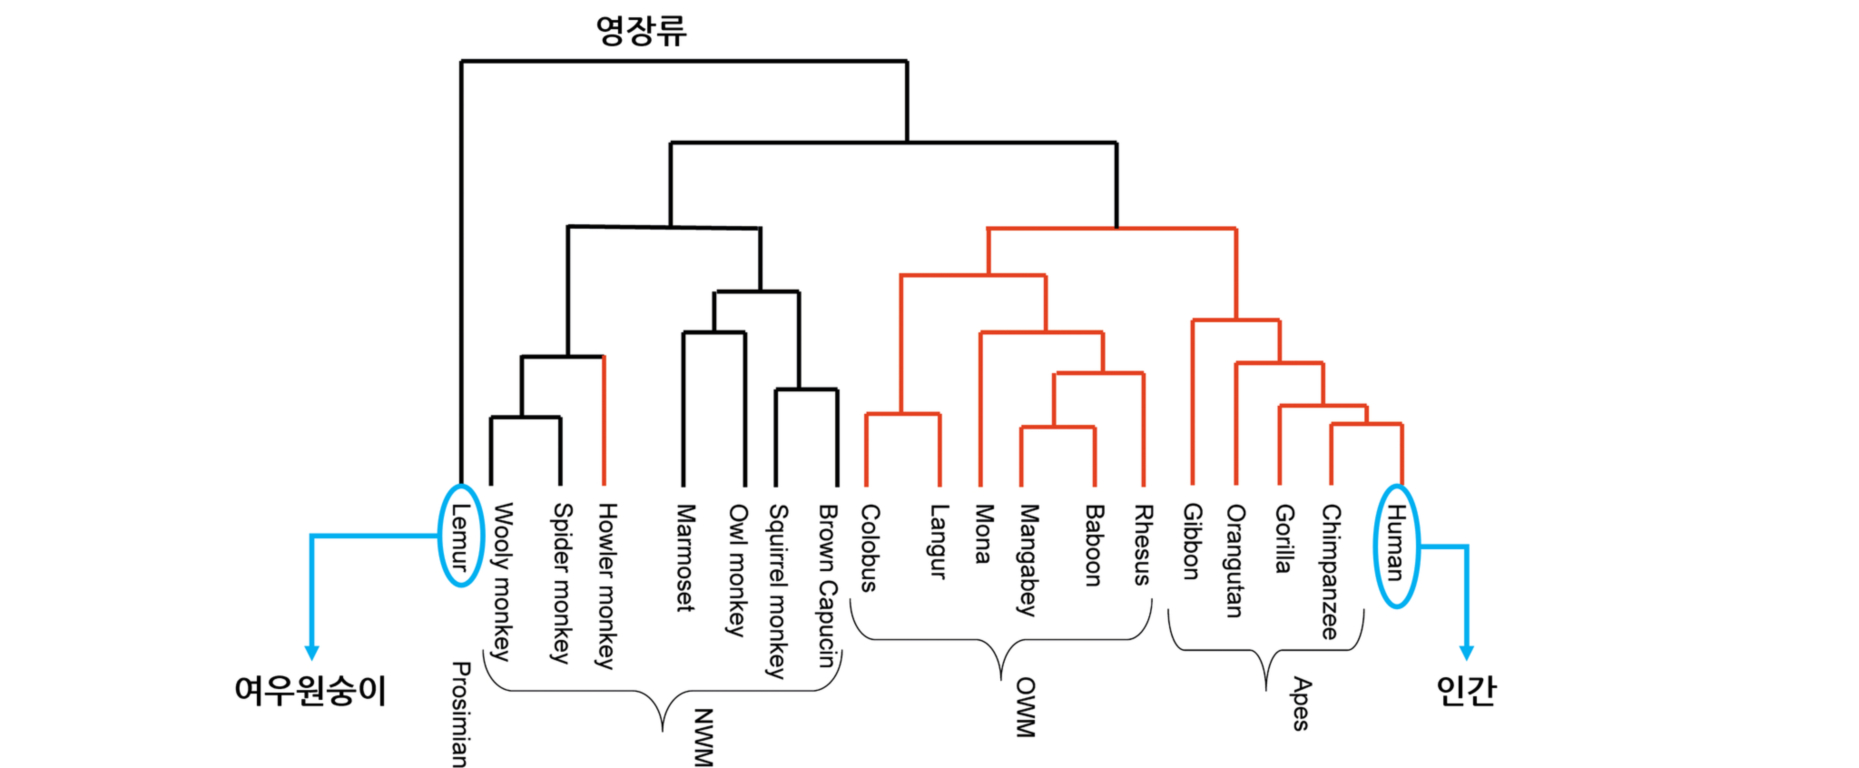 영장류의 “족보”인 진화계통수(phylogenetic tree)입니다. 계통수의 맨 왼쪽에 여우원숭이가, 맨 오른쪽에 인간이 있습니다. 여우원숭이는 인간과 가장 유전적 거리가 멀리 떨어진 영장류입니다. 출처: PLoS Biol 2, e5 (2004), CC-BY 4.0.